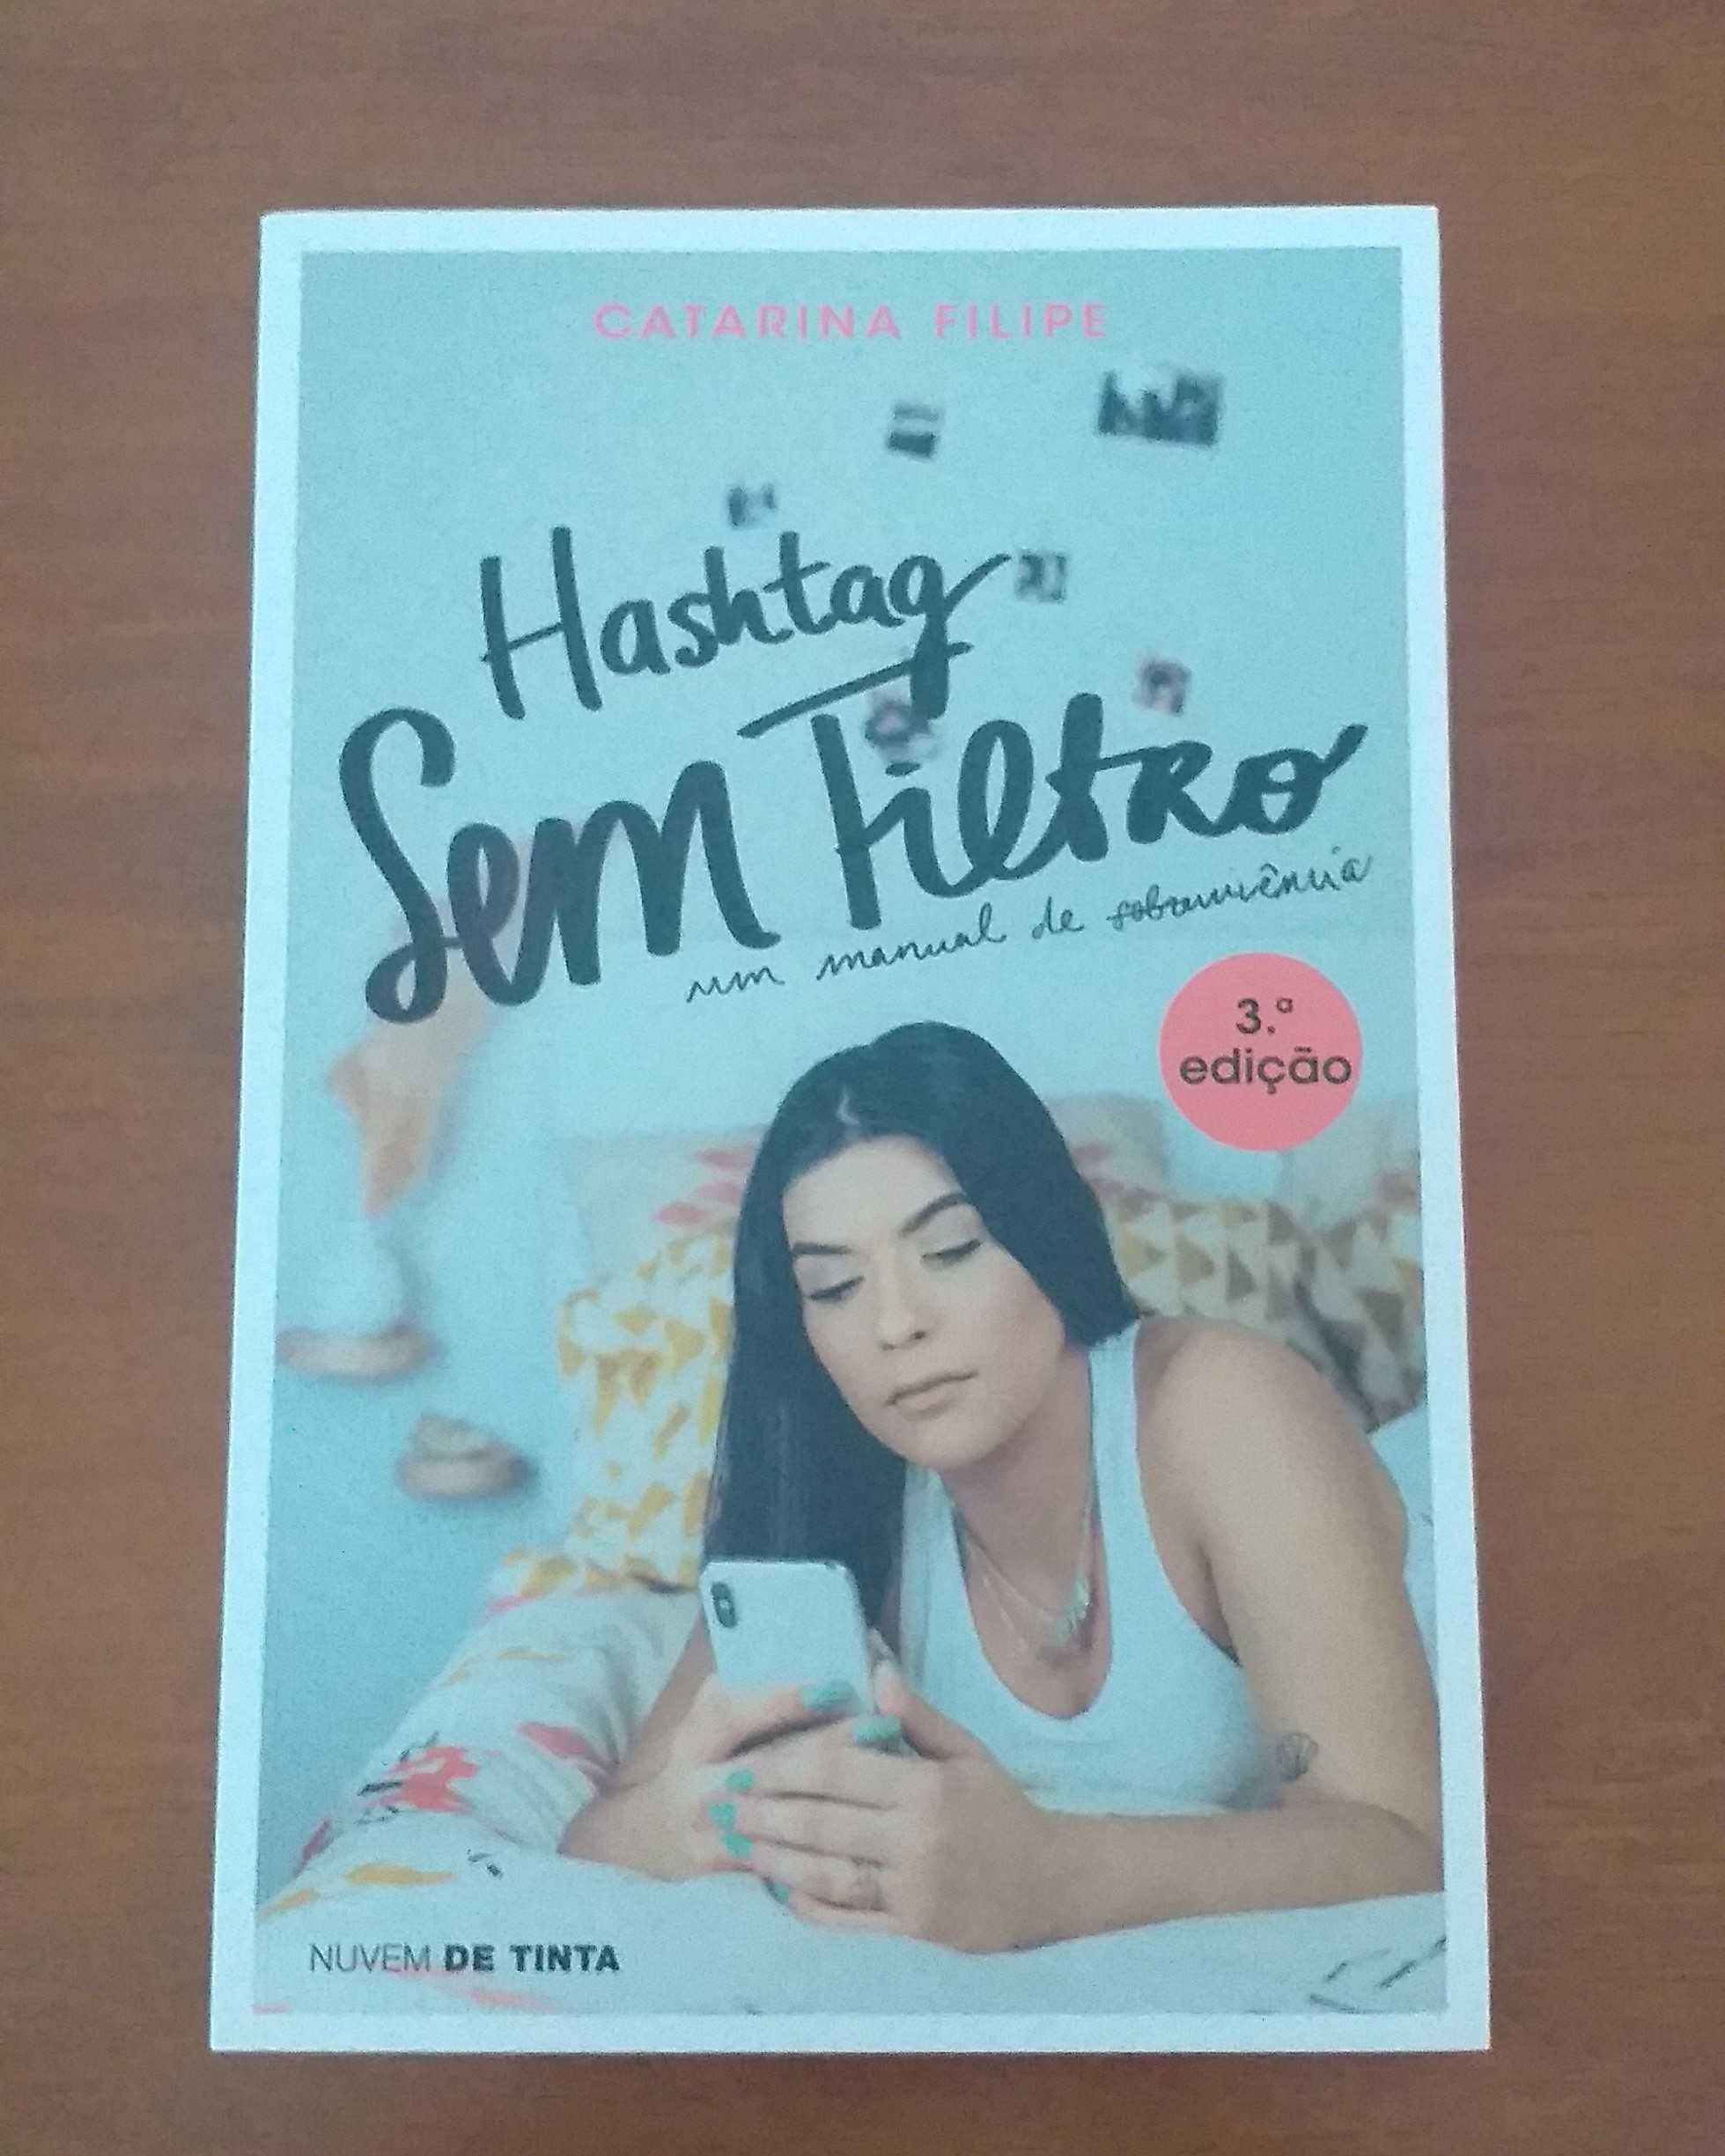 Livro “Hashtag Sem Filtro”, de Catarina Filipe